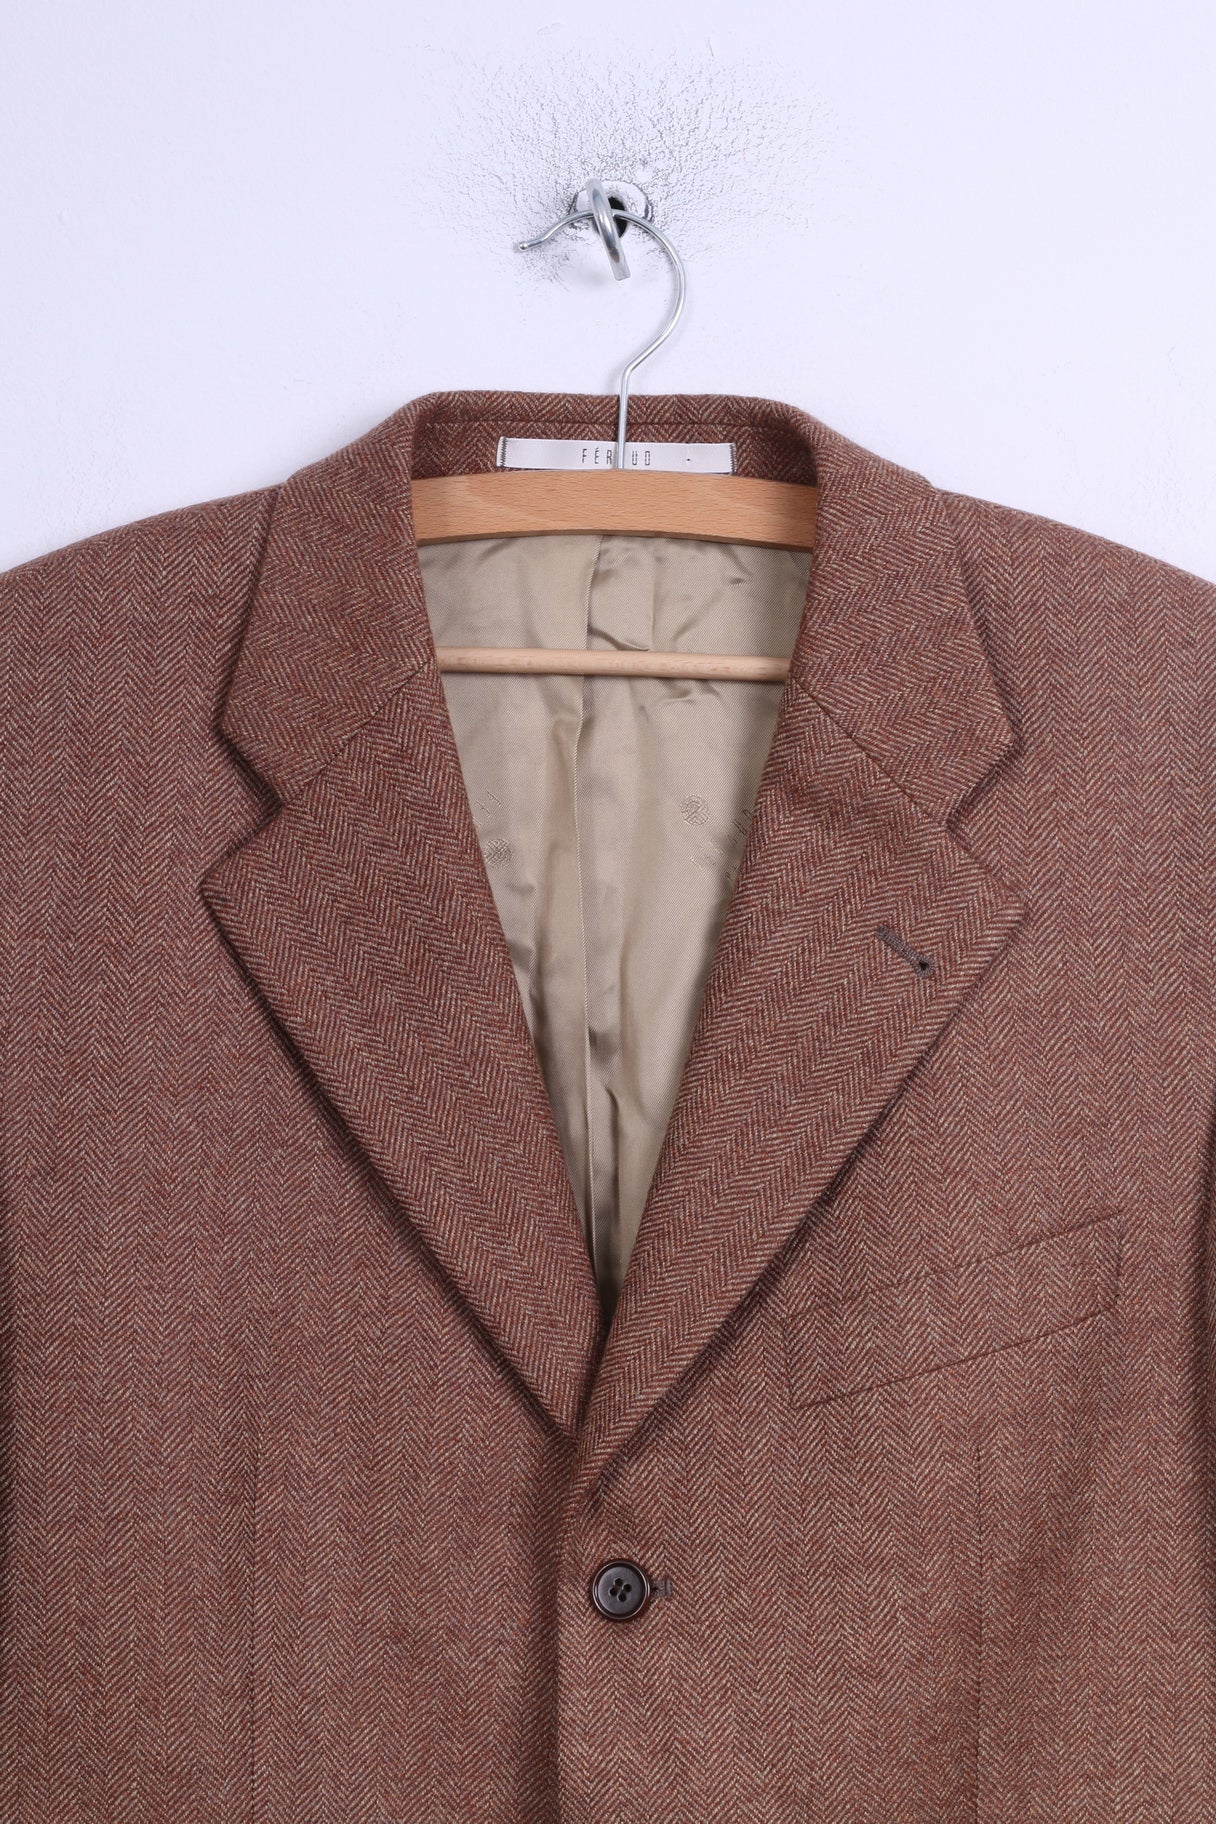 Feraud Mens 98 M Jacket Brown Wool Herringbone Single Breasted Blazer